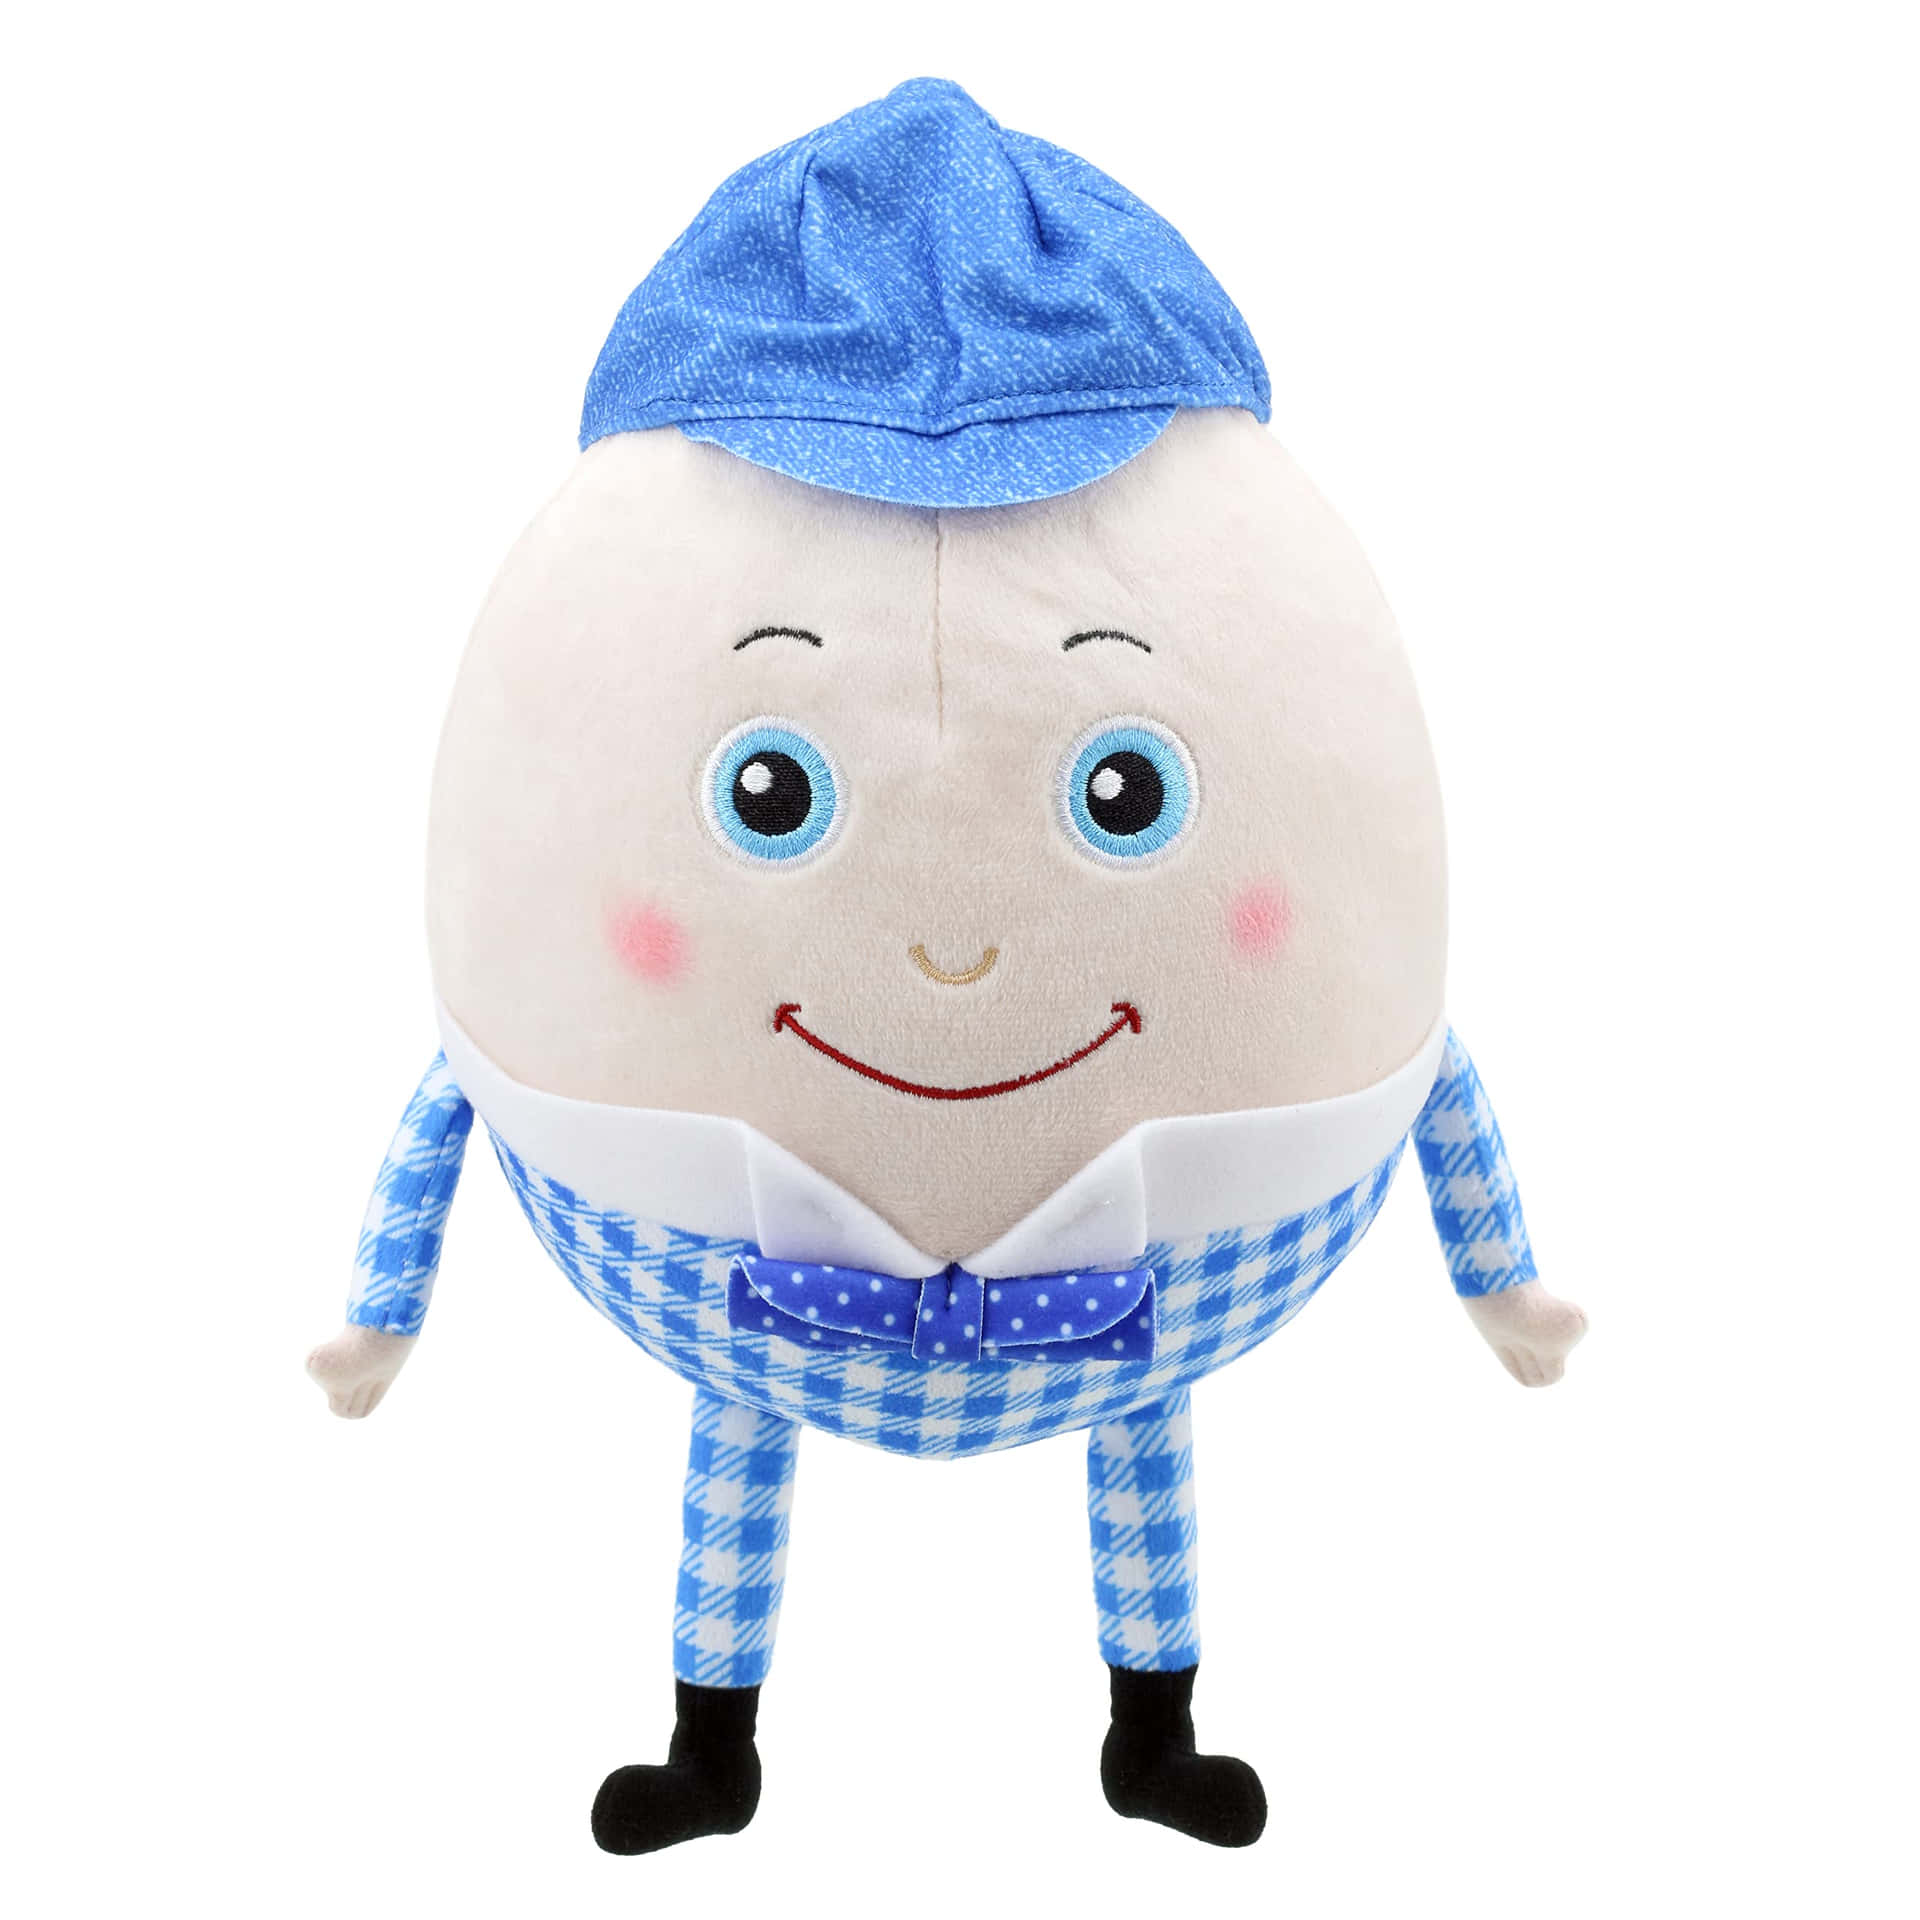 Immaginedi Humpty Dumpty Con Un Cappello Blu.